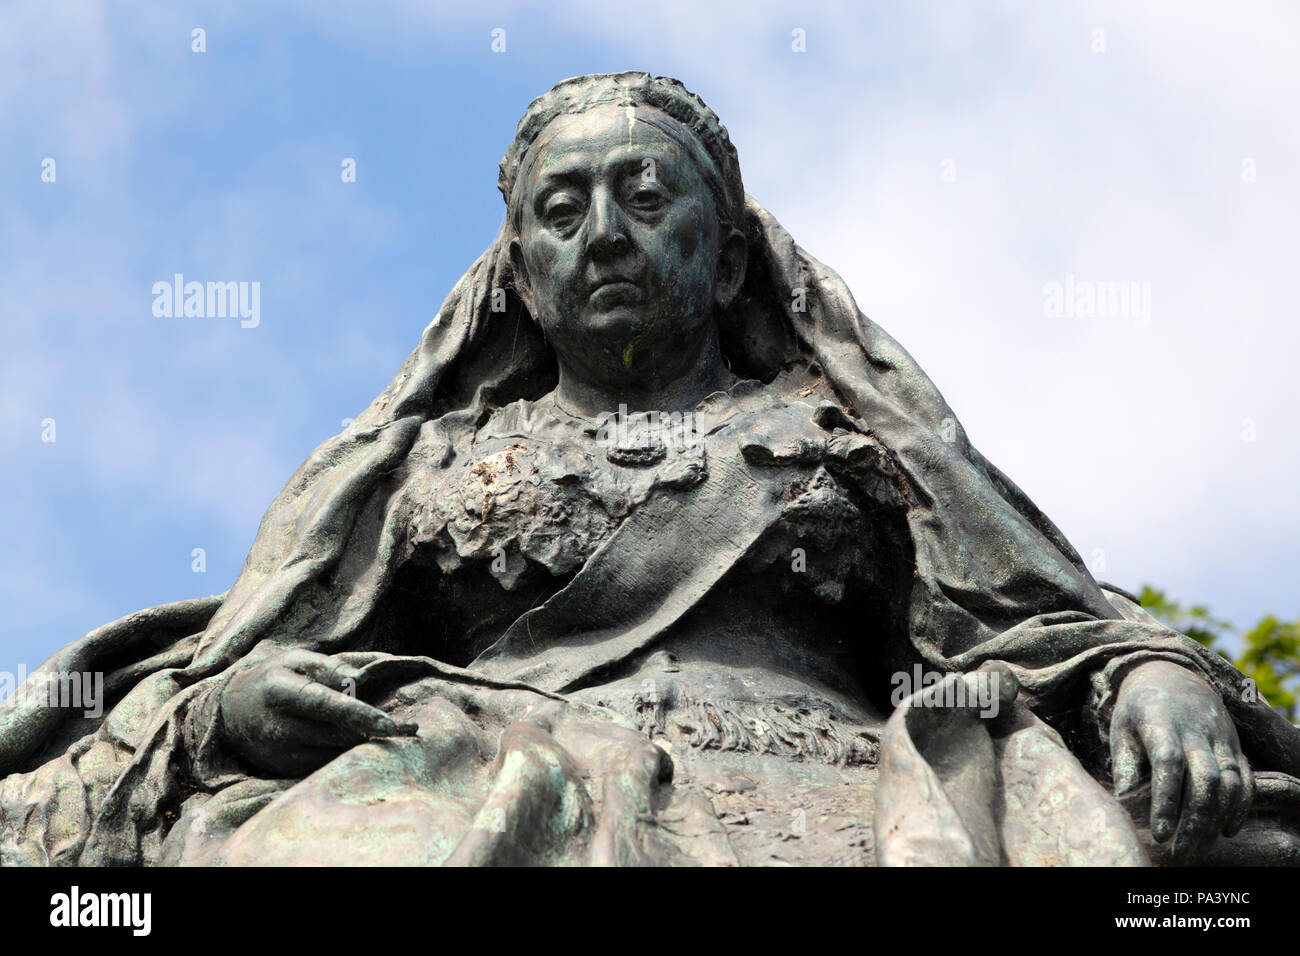 La regina Victoria statua di Tynemouth in Inghilterra. La regina Victoria regnò dal 1837 al 1901. Foto Stock